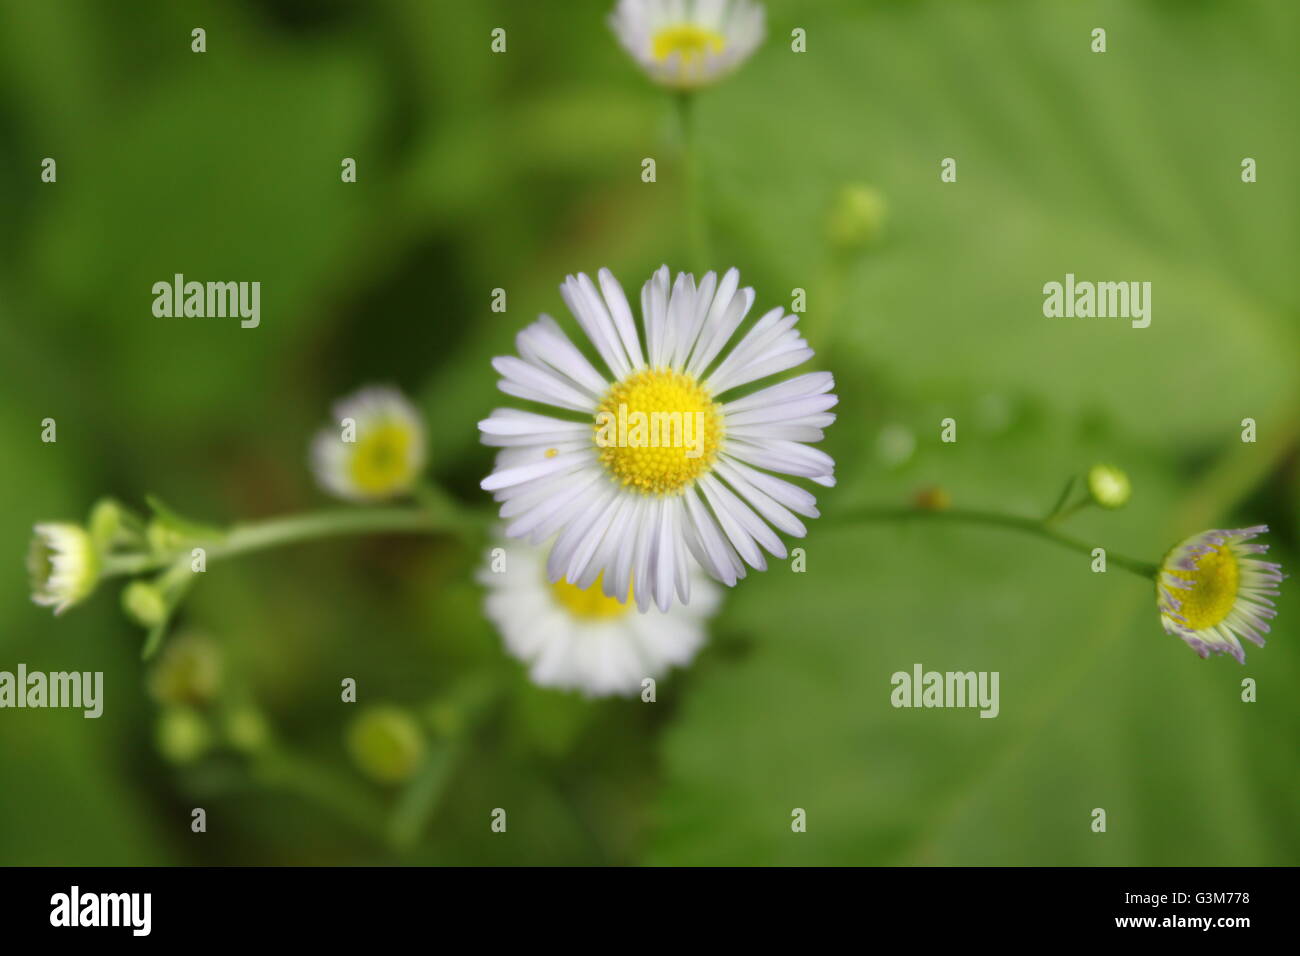 A daisy closeup Stock Photo